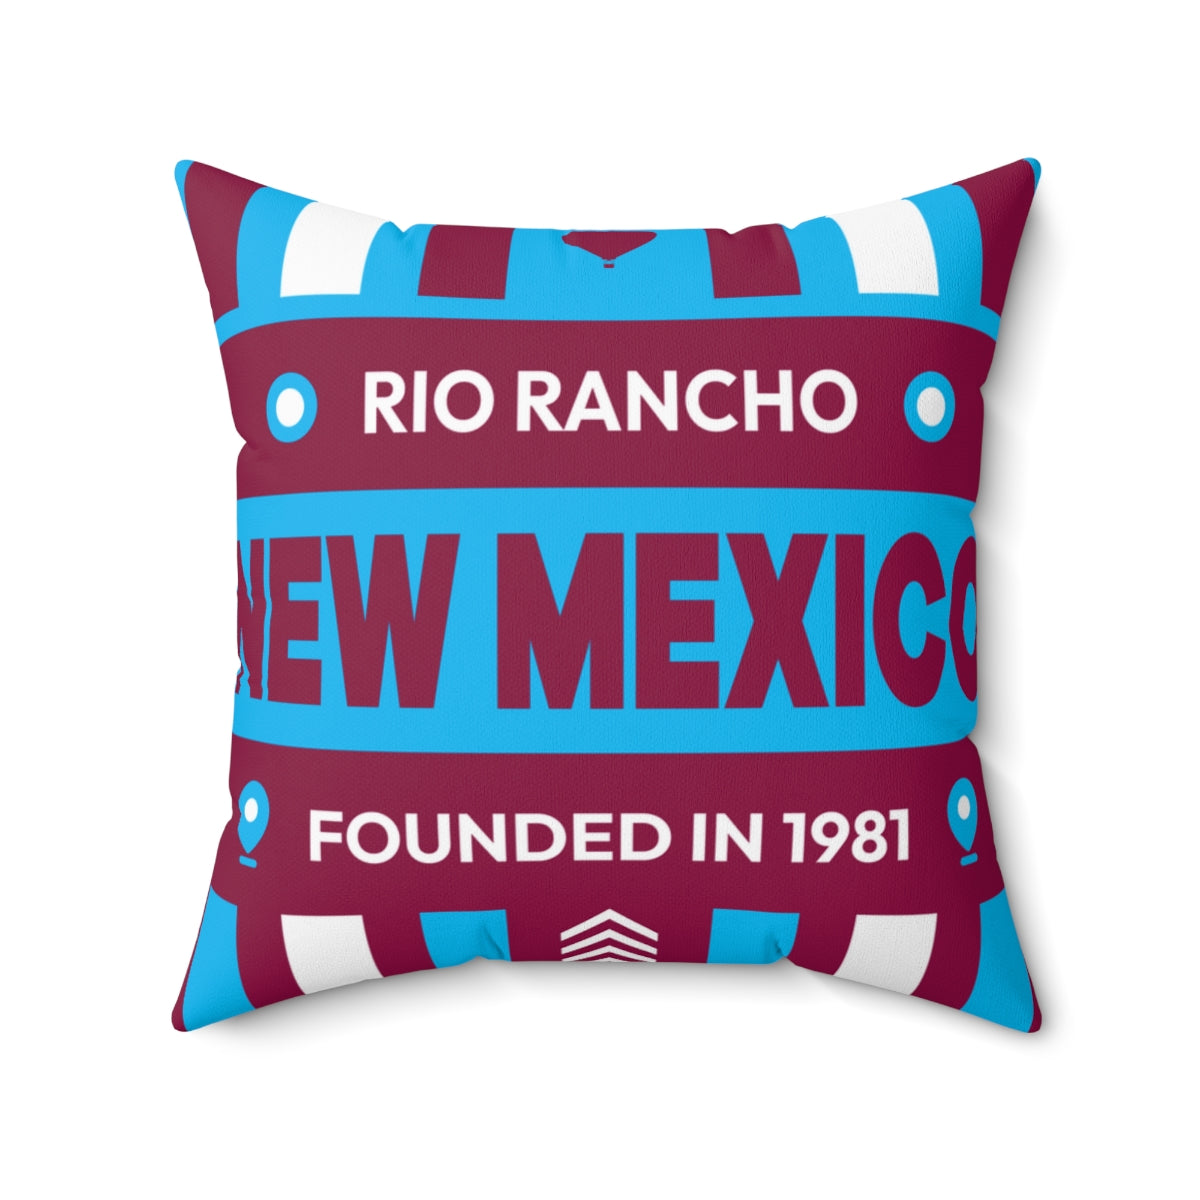 20"x20" pillow design for Rio Rancho, New Mexico Top view.